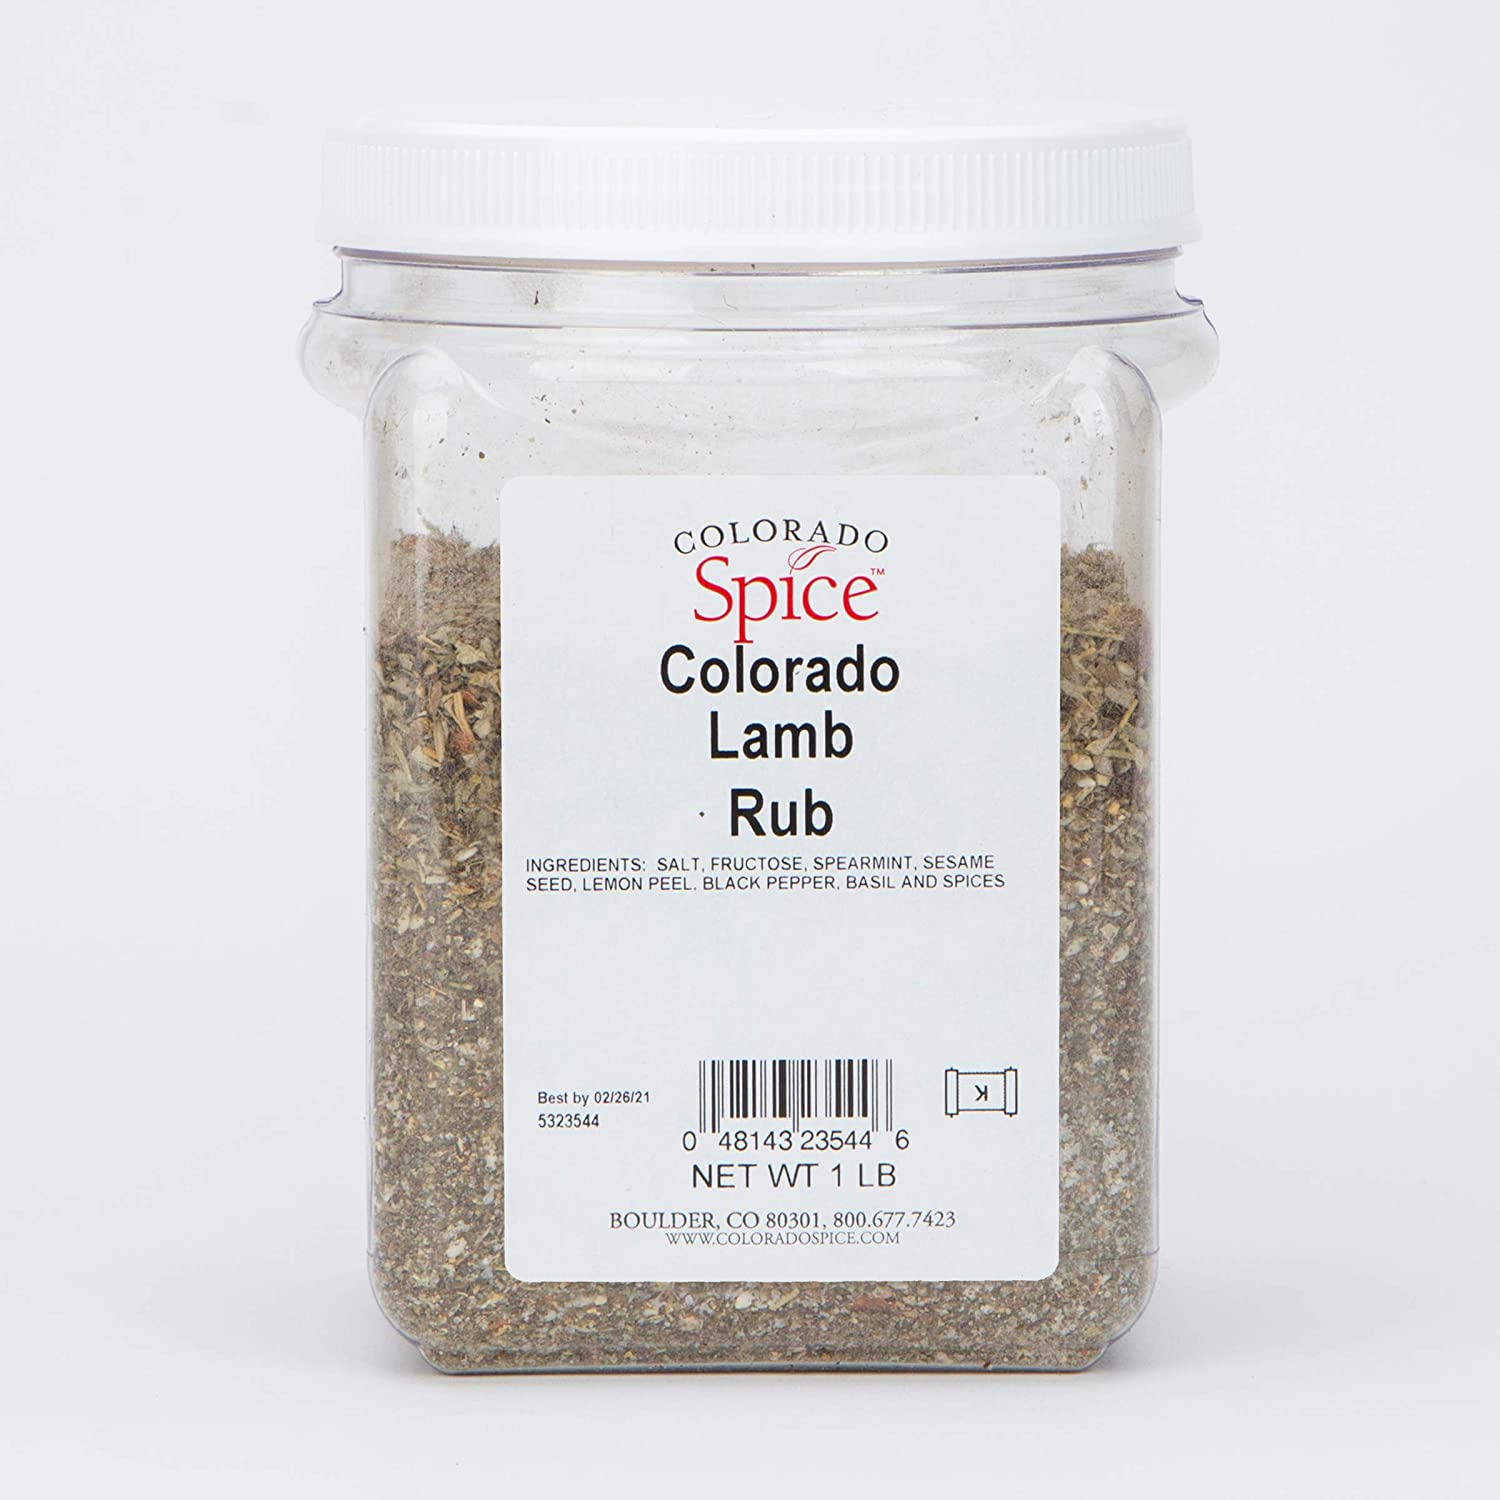 Colorado Spice Colorado Lamb Rub